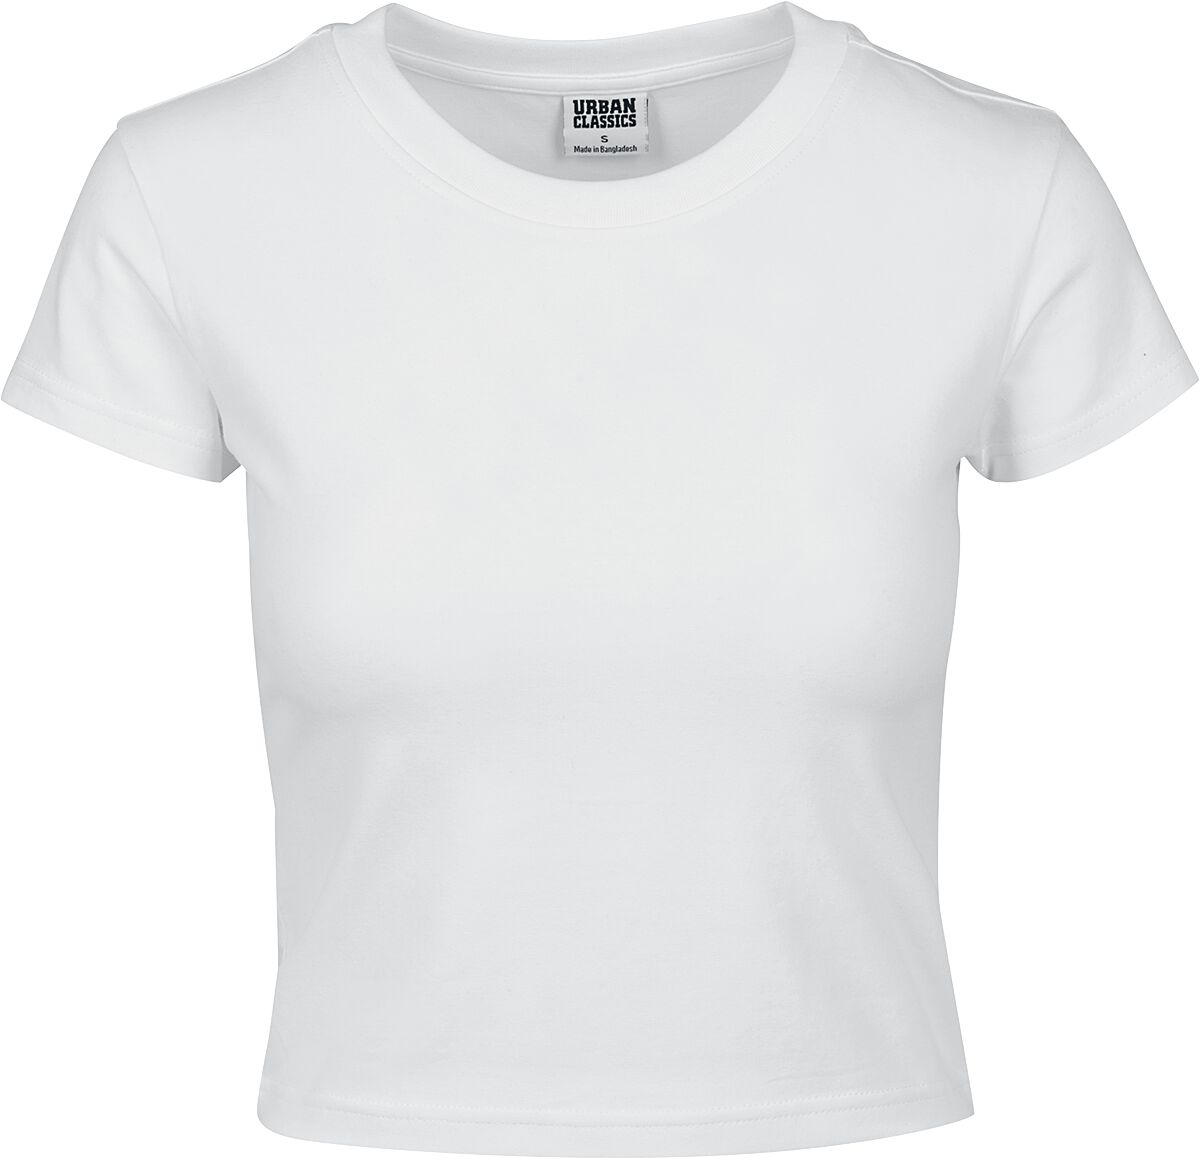 T-Shirt Manches courtes de Urban Classics - Crop Top Femme En Jersey Souple - XS à XL - pour Femme -